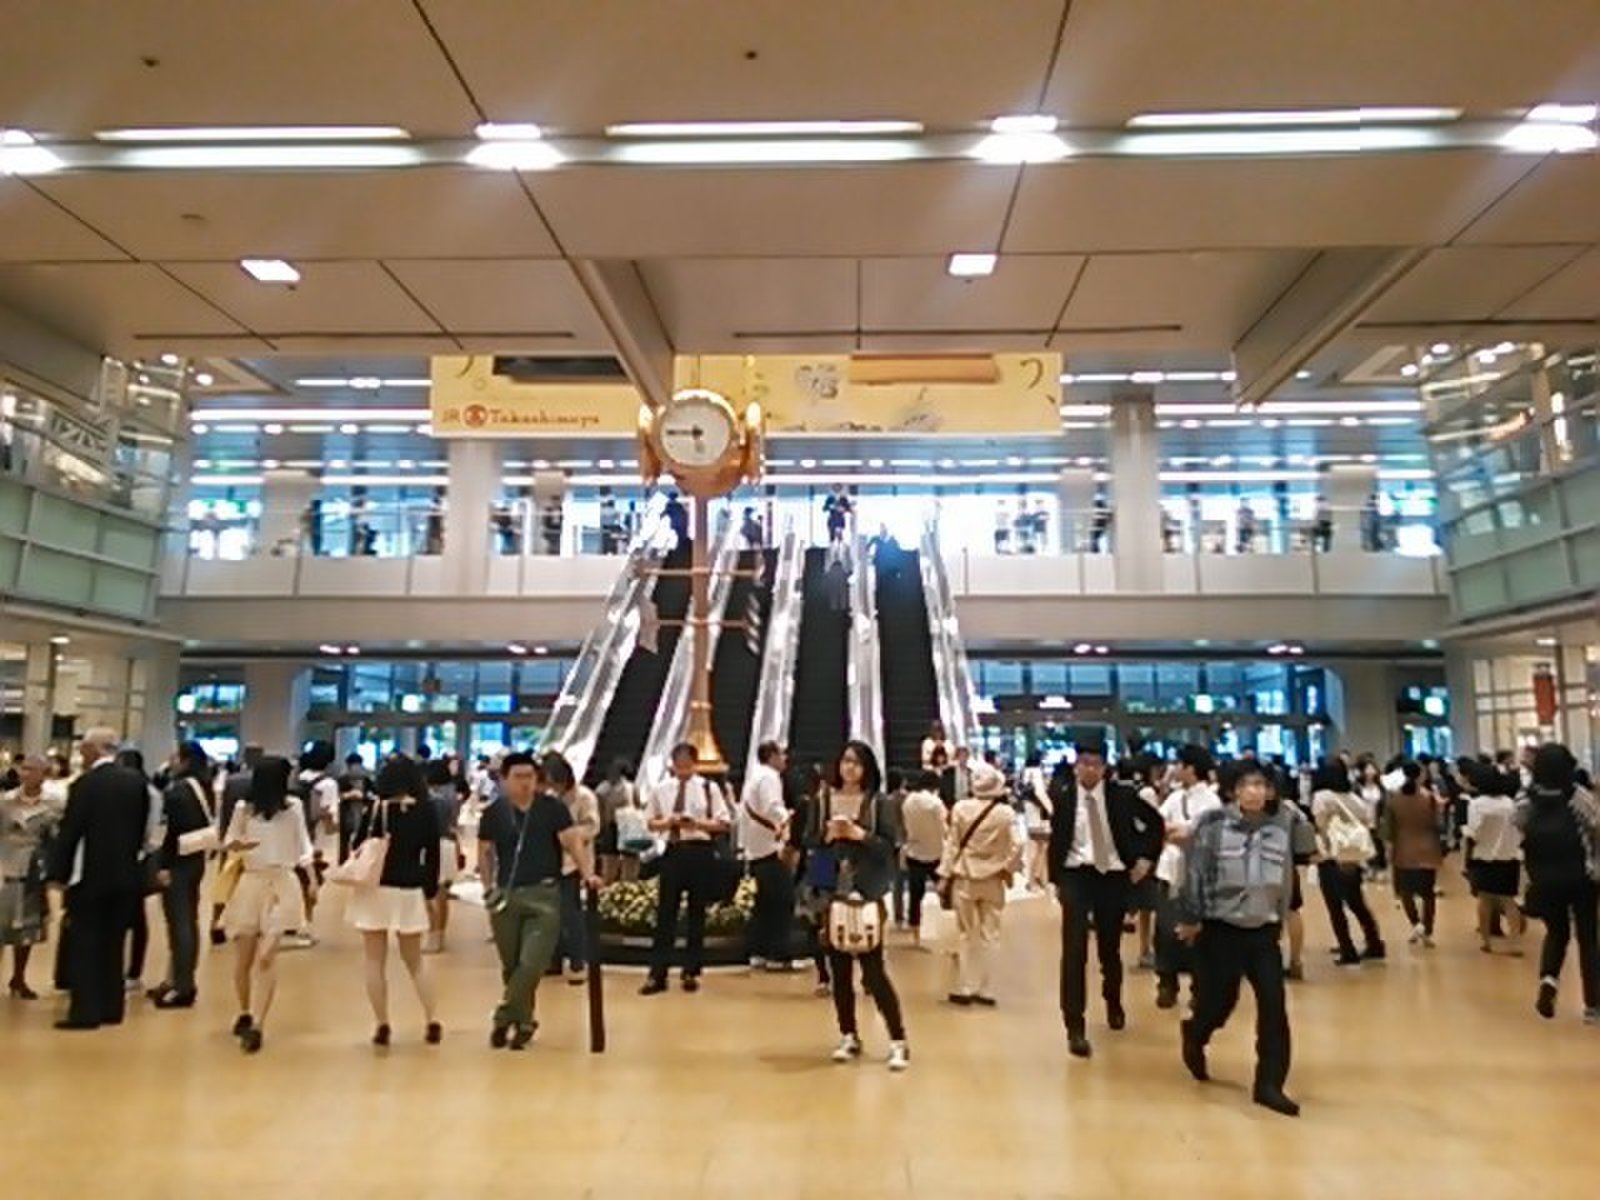 名古屋駅前観光ゴージャス気分 雨の日でも楽しめるショッピングデートスポット満載 Playlife プレイライフ